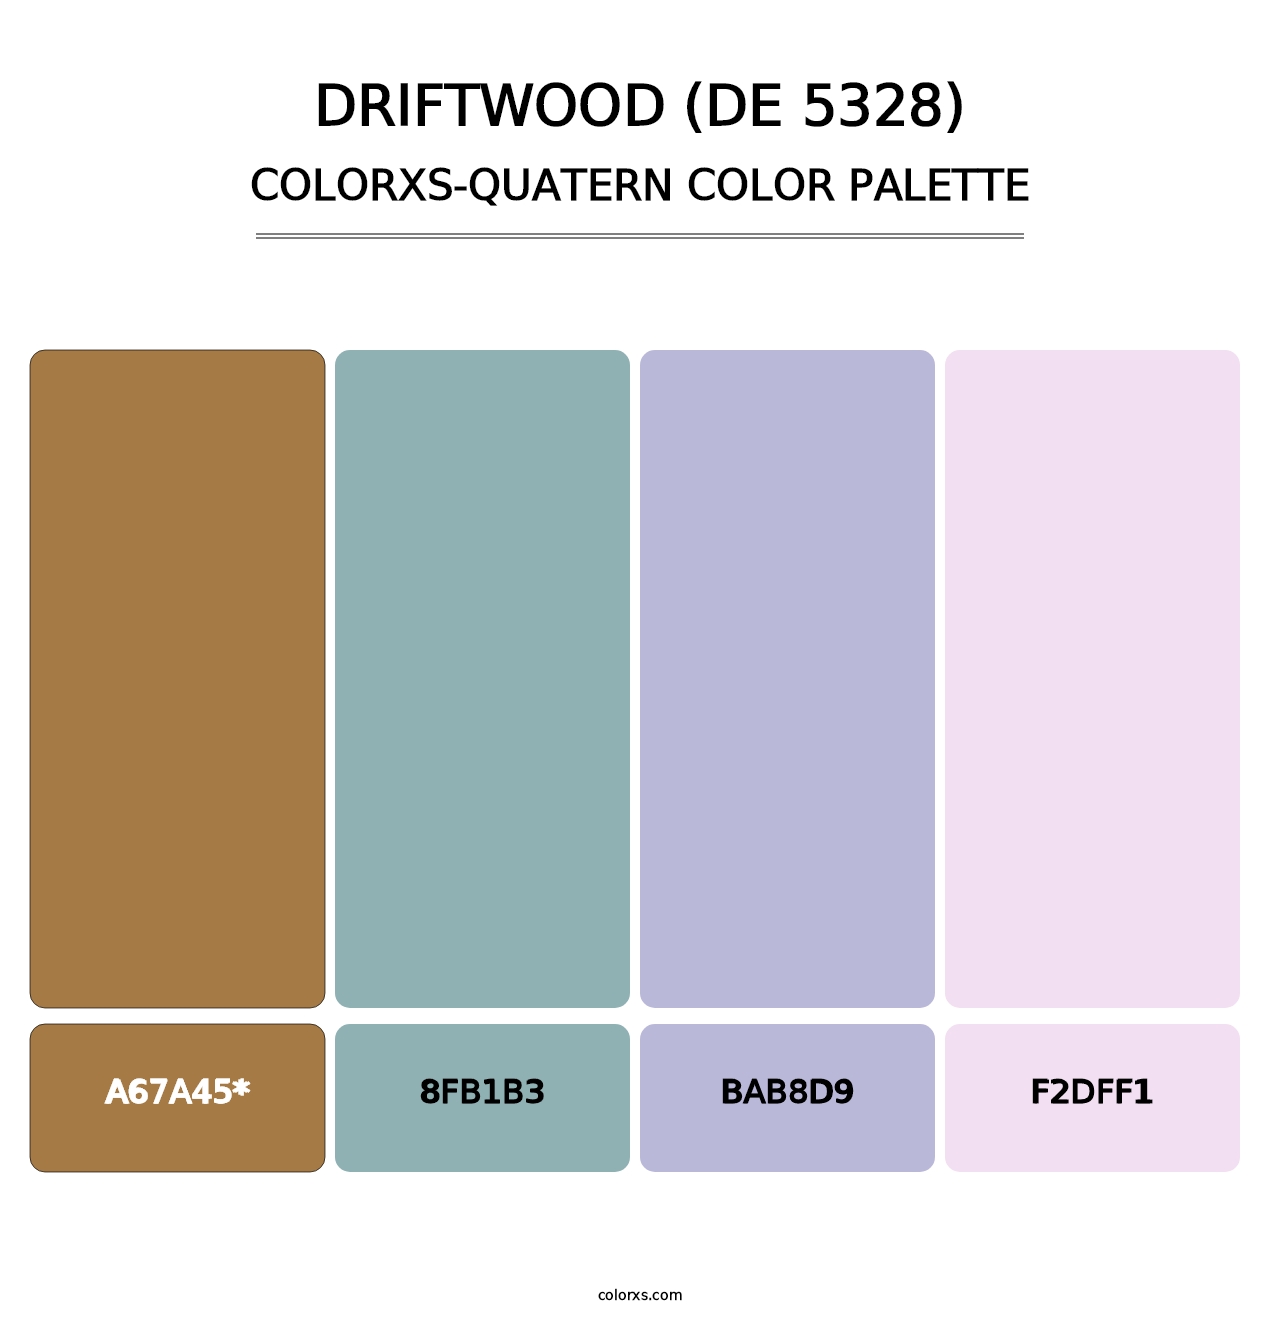 Driftwood (DE 5328) - Colorxs Quatern Palette